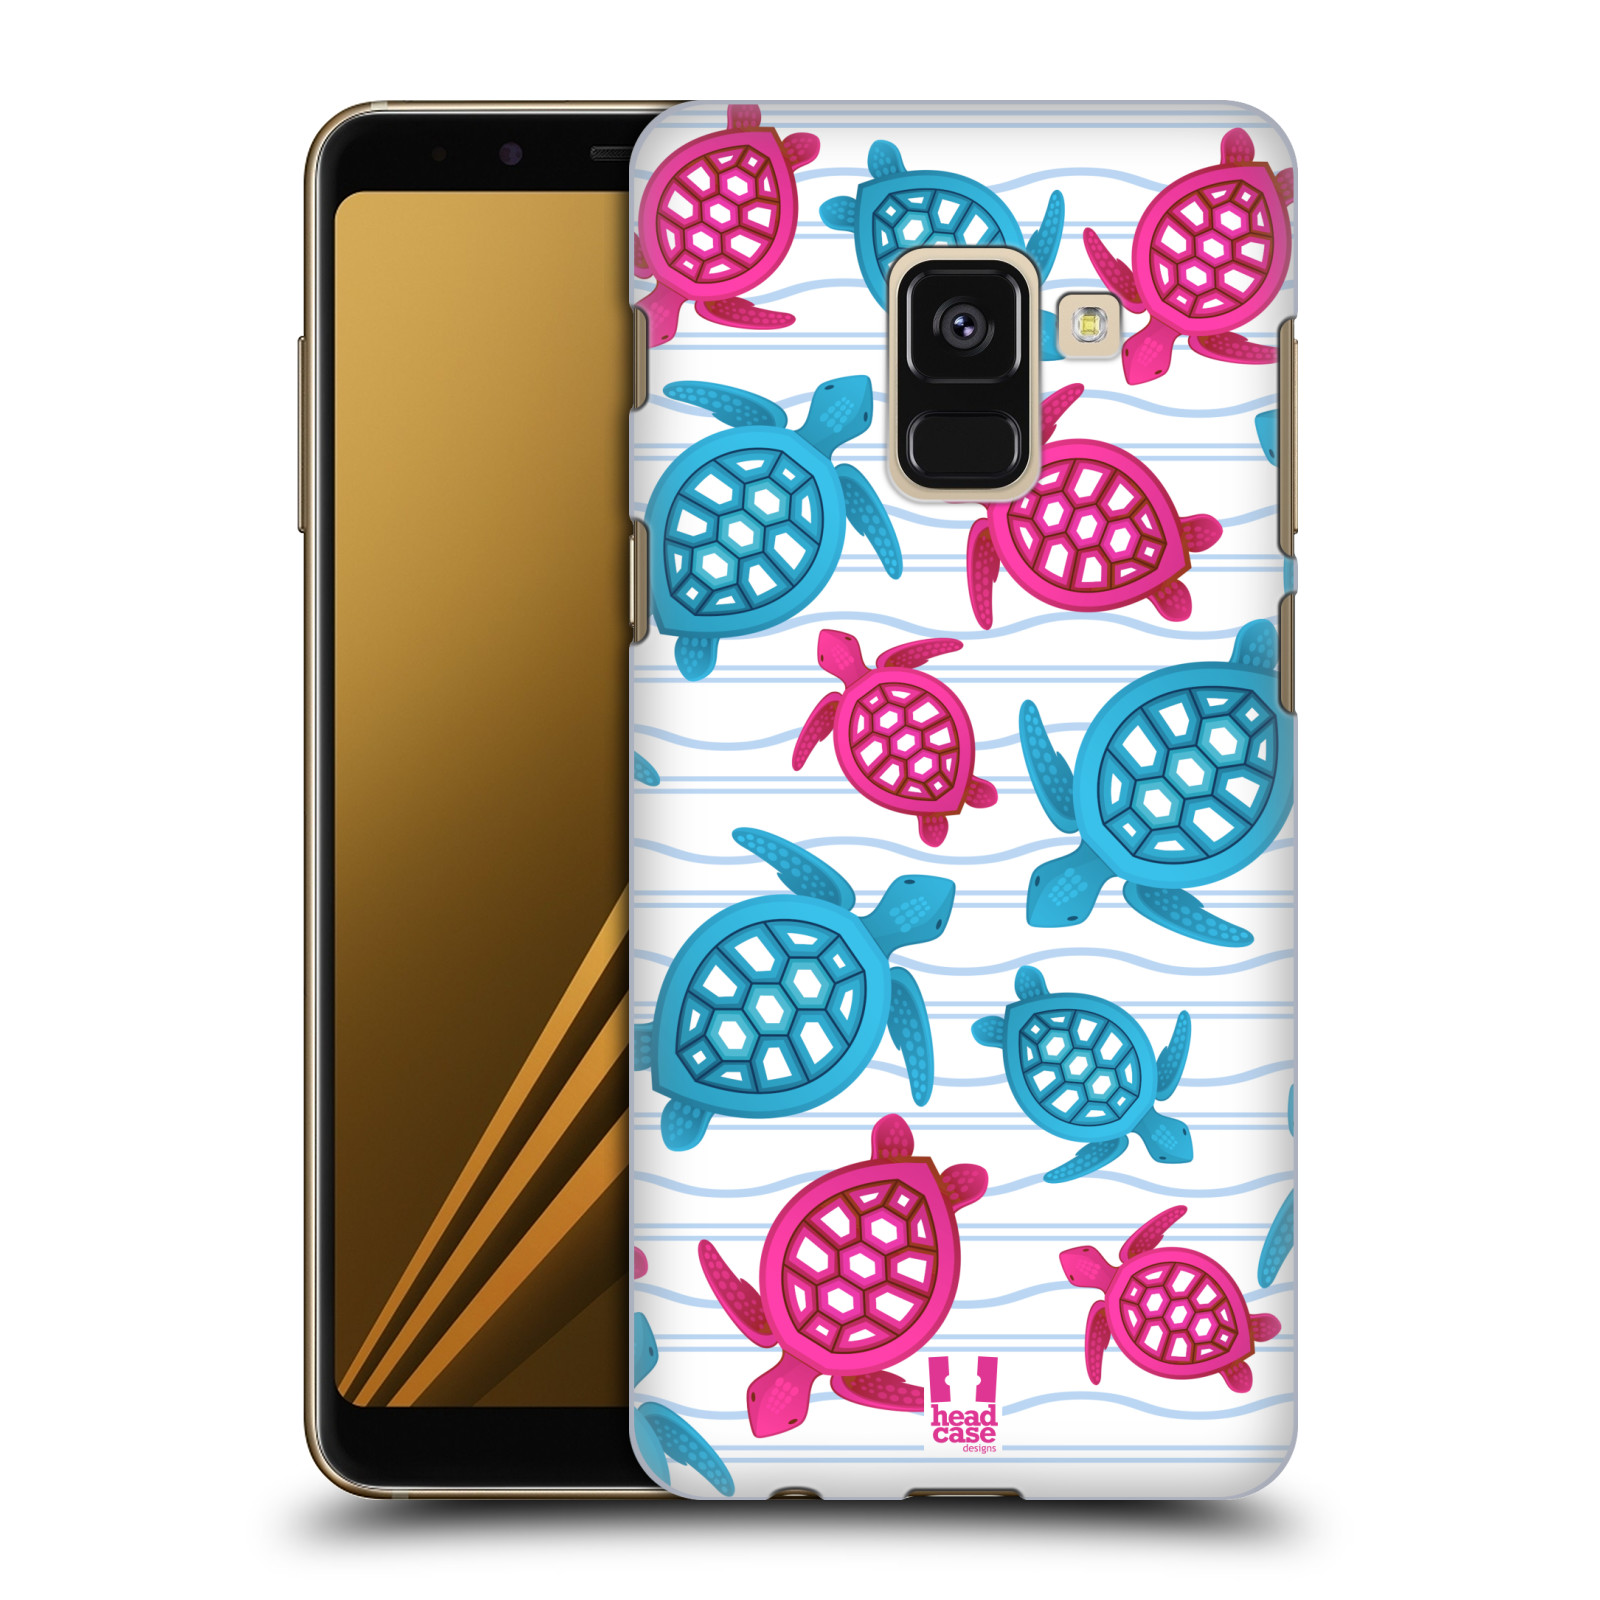 Zadní obal pro mobil Samsung Galaxy A8+ - HEAD CASE - kreslený mořský vzor želvičky